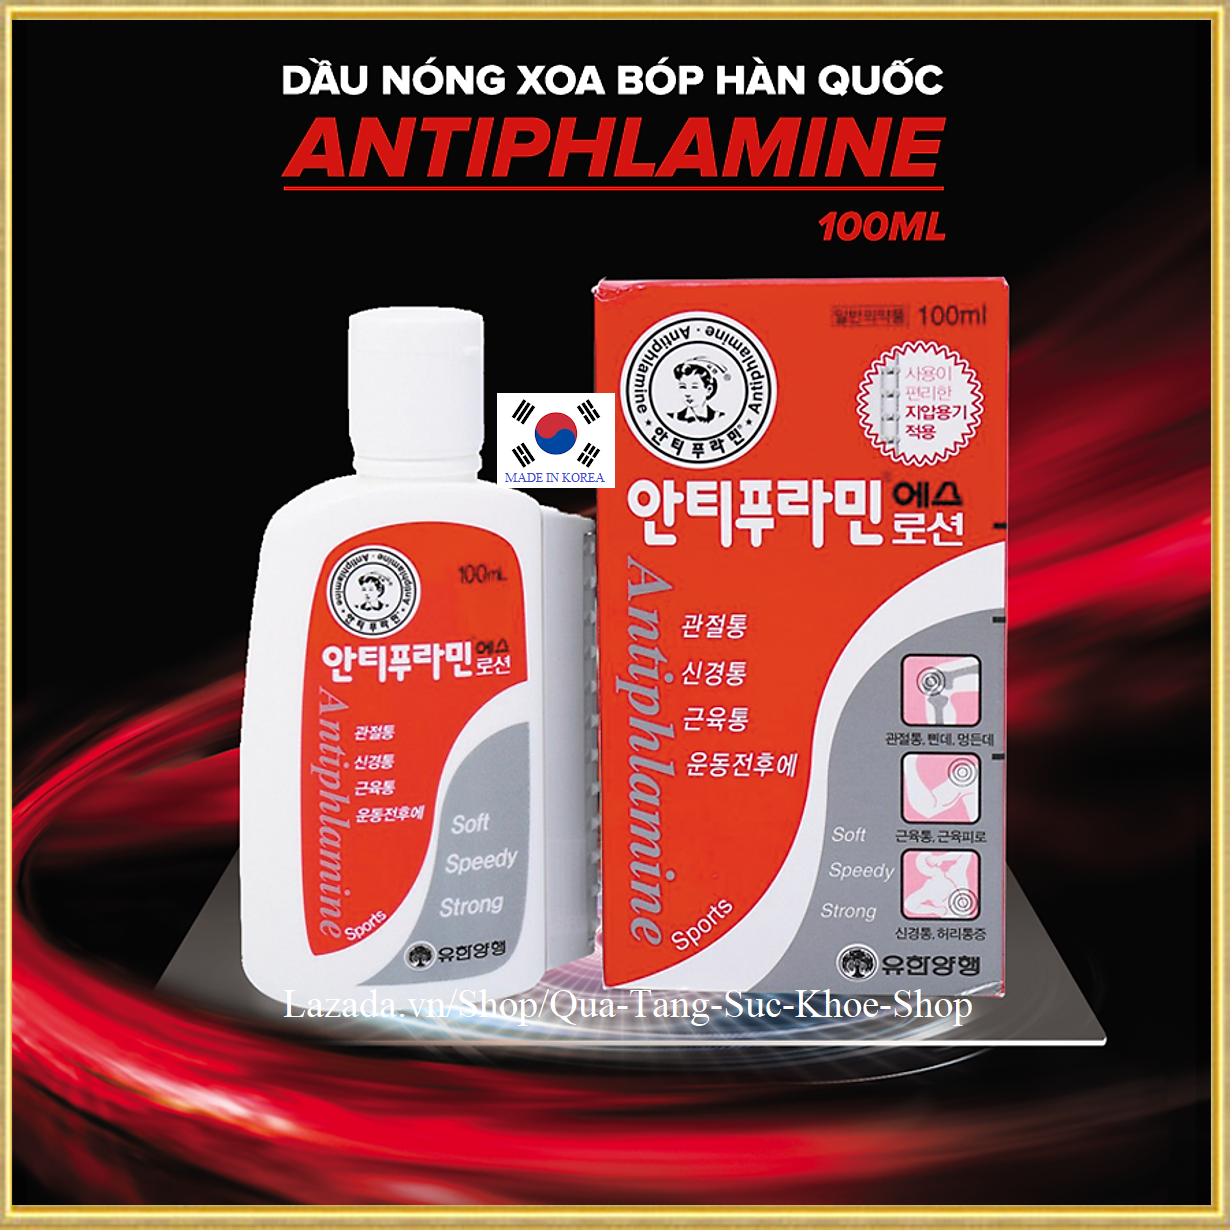 Dầu Nóng Xoa Bóp Hàn Quốc thương hiệu Antiphlamine 100ml/Hộp